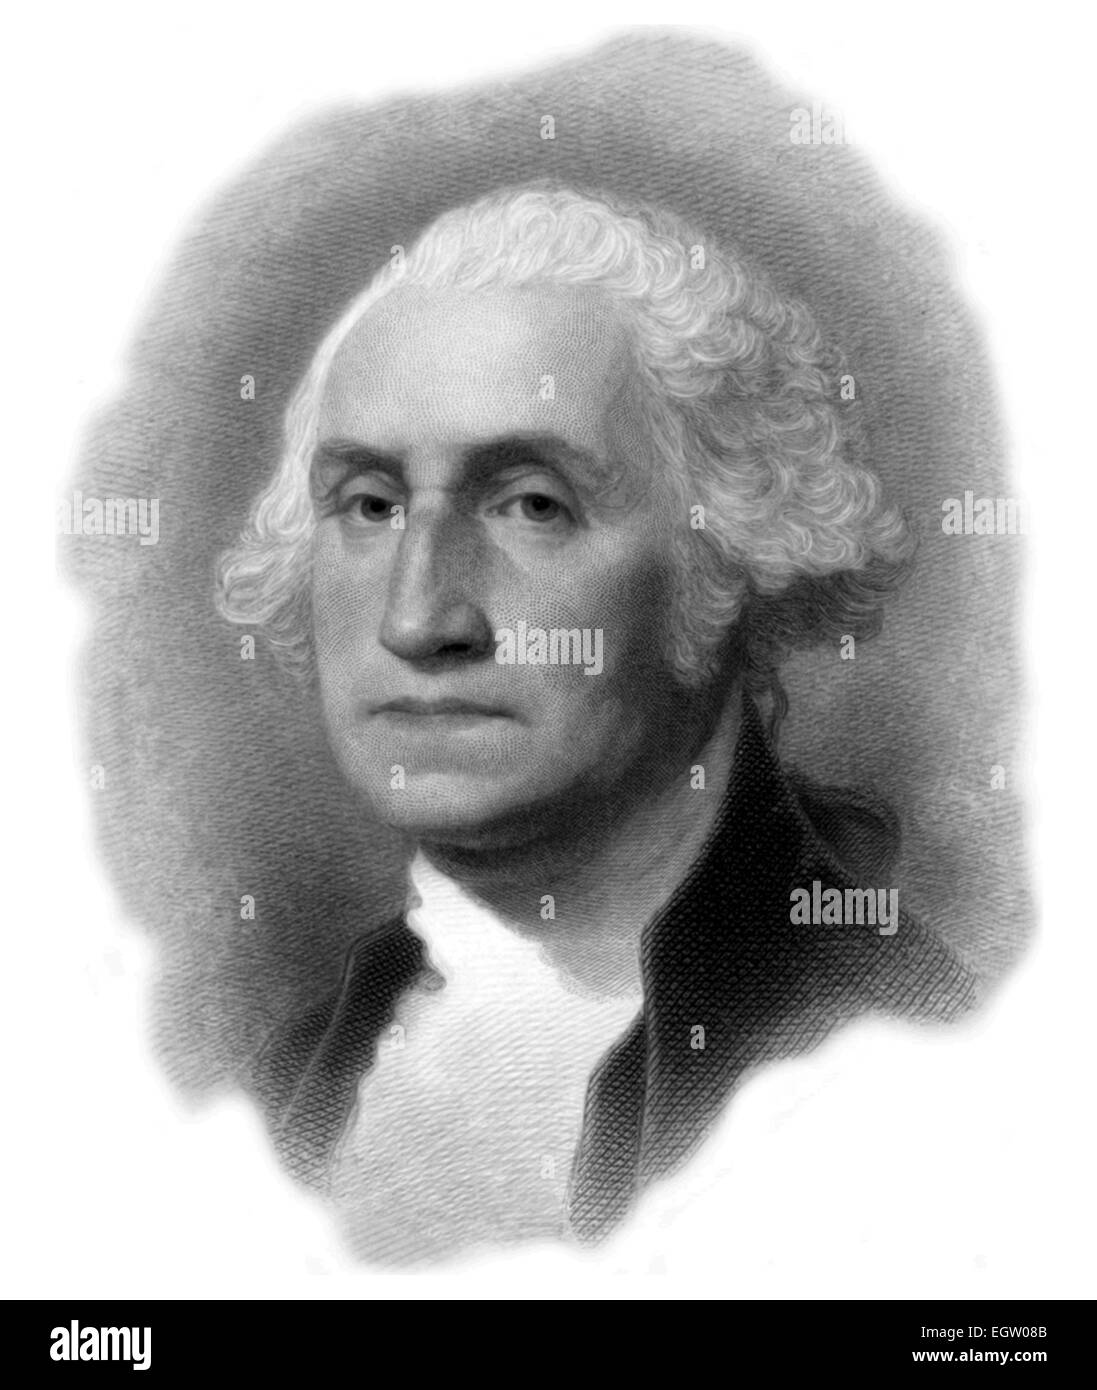 Porträt des amerikanischen Präsidenten George Washington in einem Kupferstich von Gilbert Stuart 1879. Stockfoto